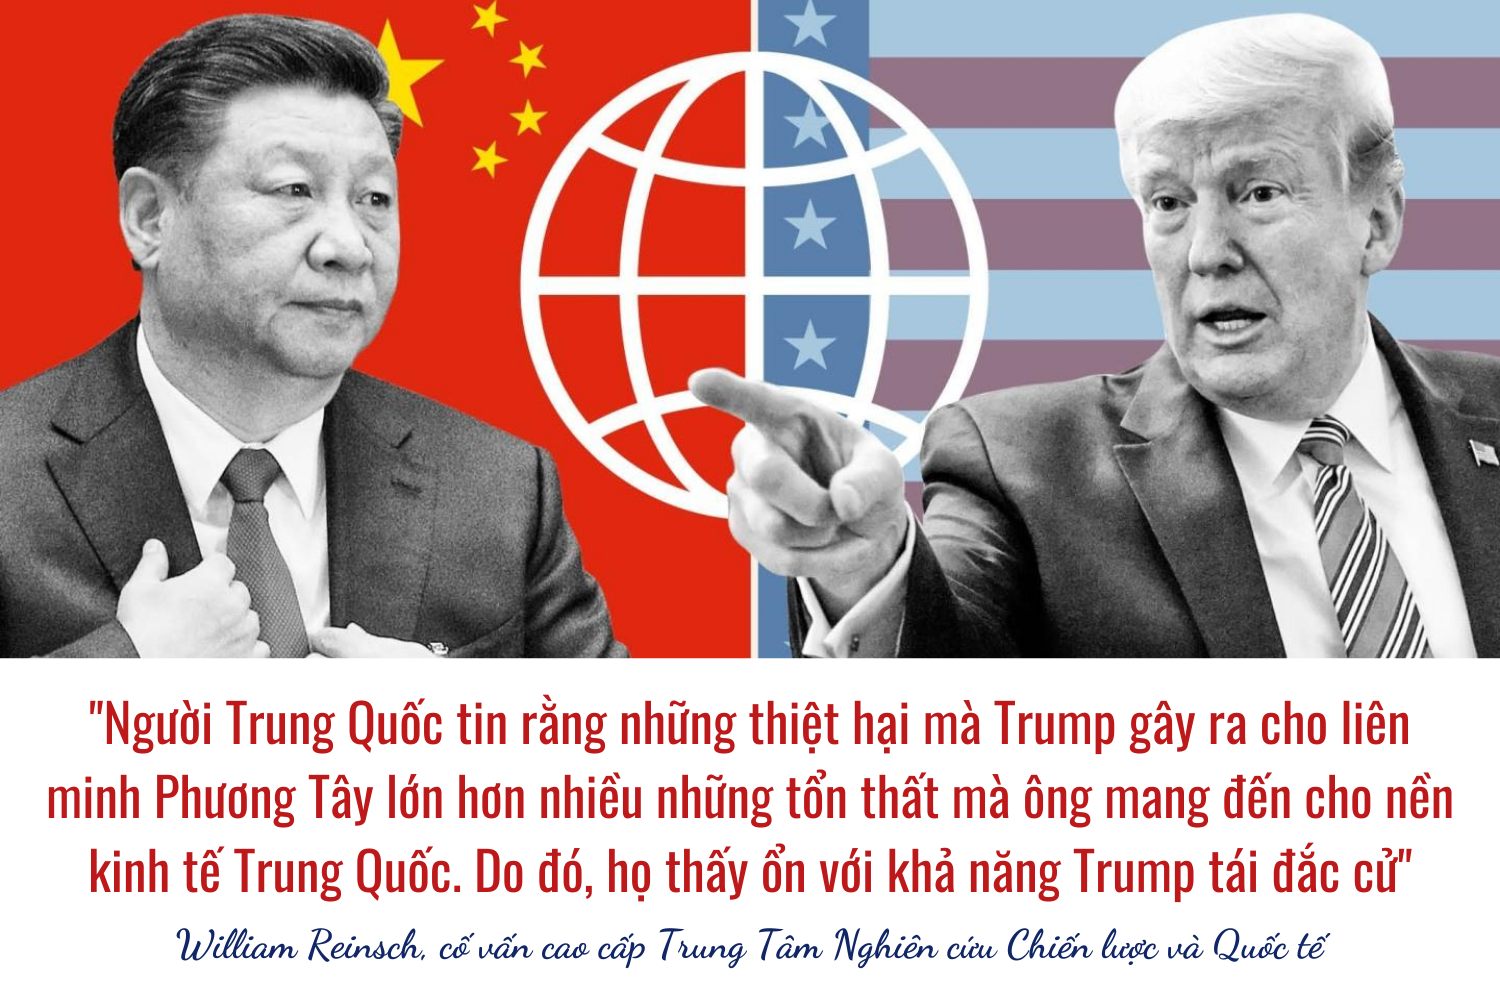 Bầu Cử Tổng Thống Mỹ 2020: Nhà Cái Đặt Cược Vào Joe Biden, Nhưng Trung Quốc  Bất Ngờ Ủng Hộ Trump?